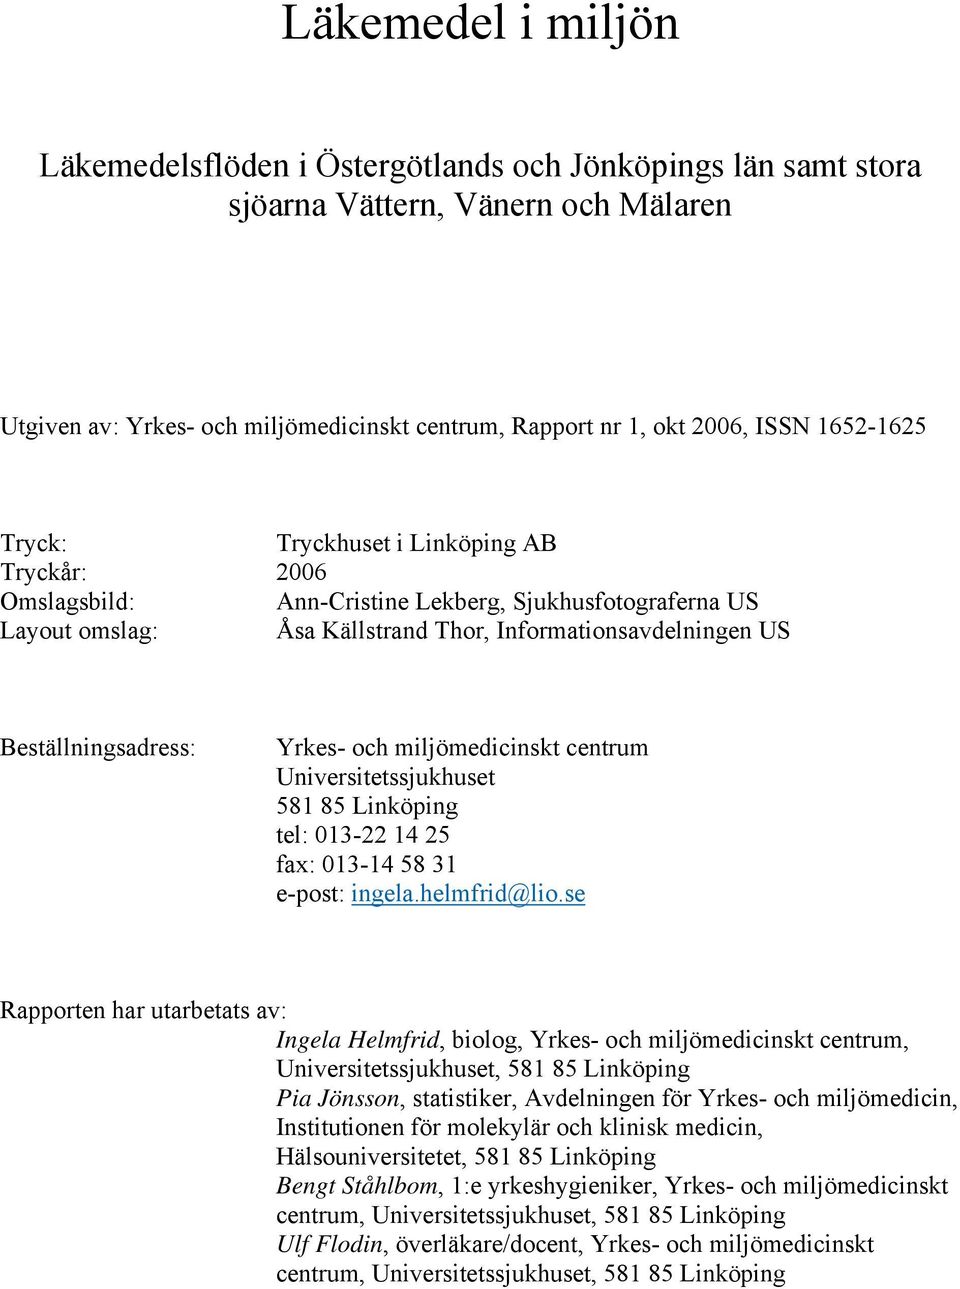 Yrkes- och miljömedicinskt centrum Universitetssjukhuset 58 85 Linköping tel: 03-22 4 25 fax: 03-4 58 3 e-post: ingela.helmfrid@lio.